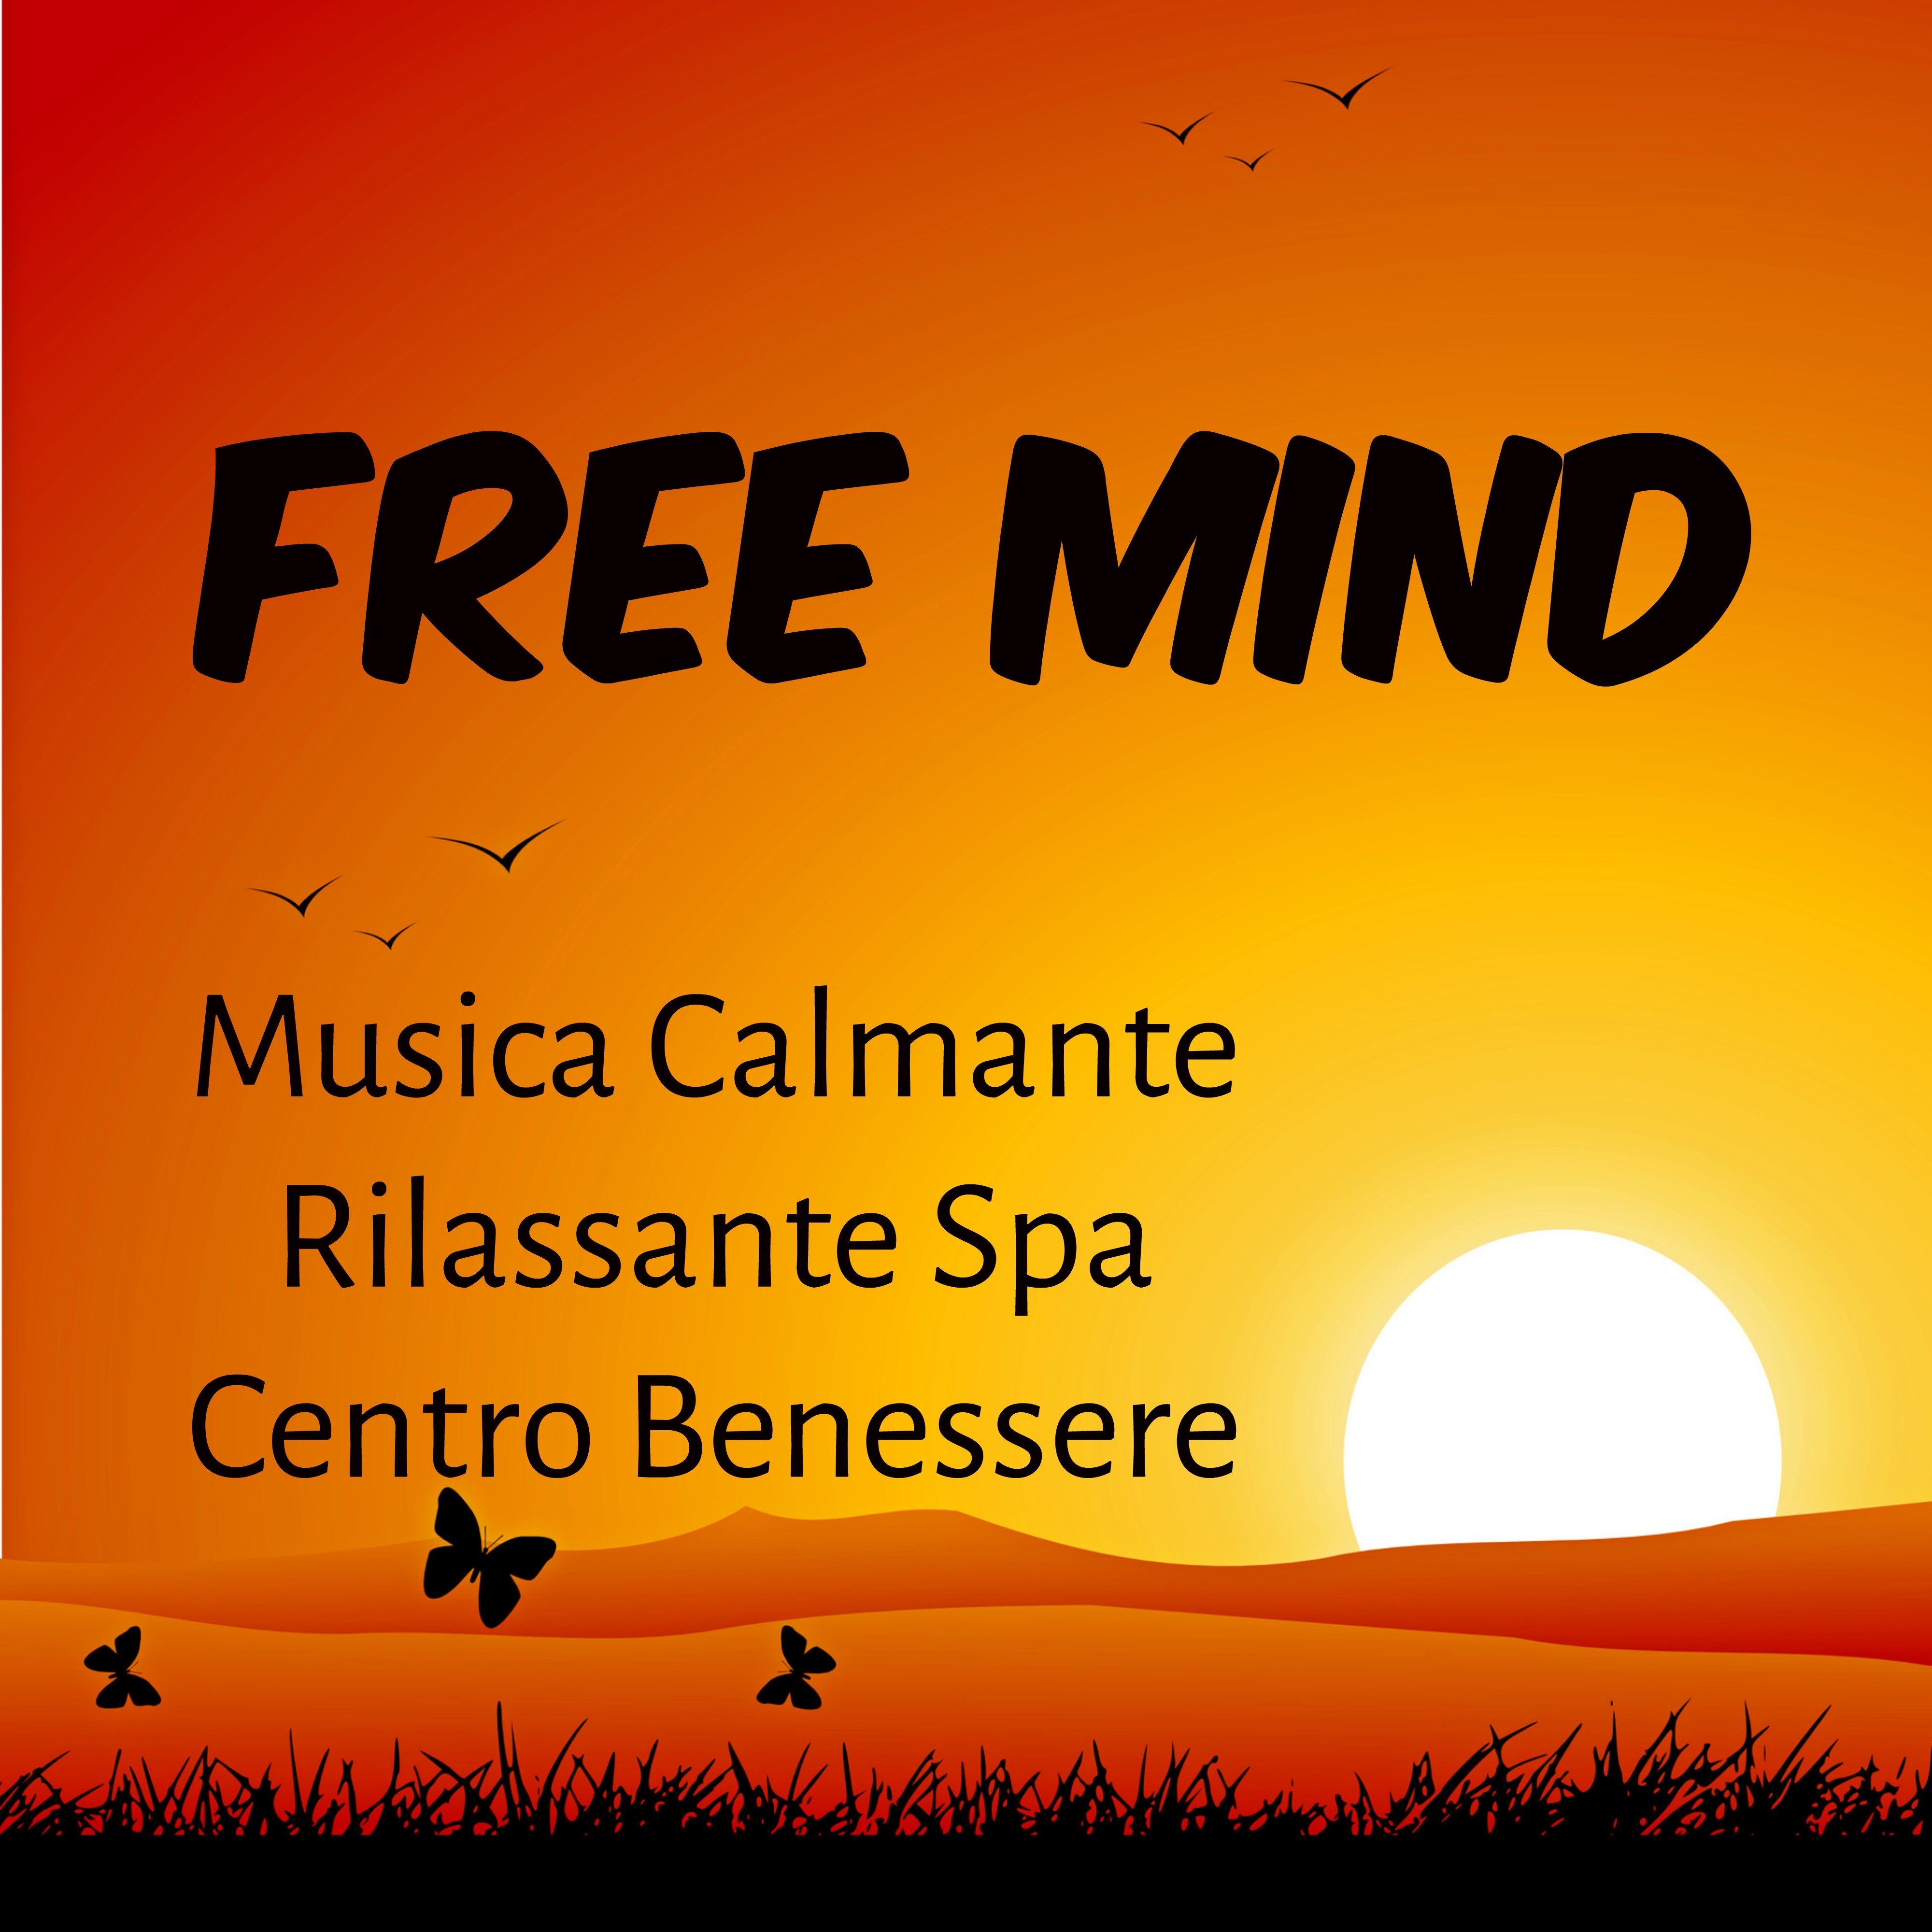 Free Mind - Musica Calmante Rilassante Spa Centro Benessere per Terapia Chakra Potere Spirituale Massaggio Terapeutico